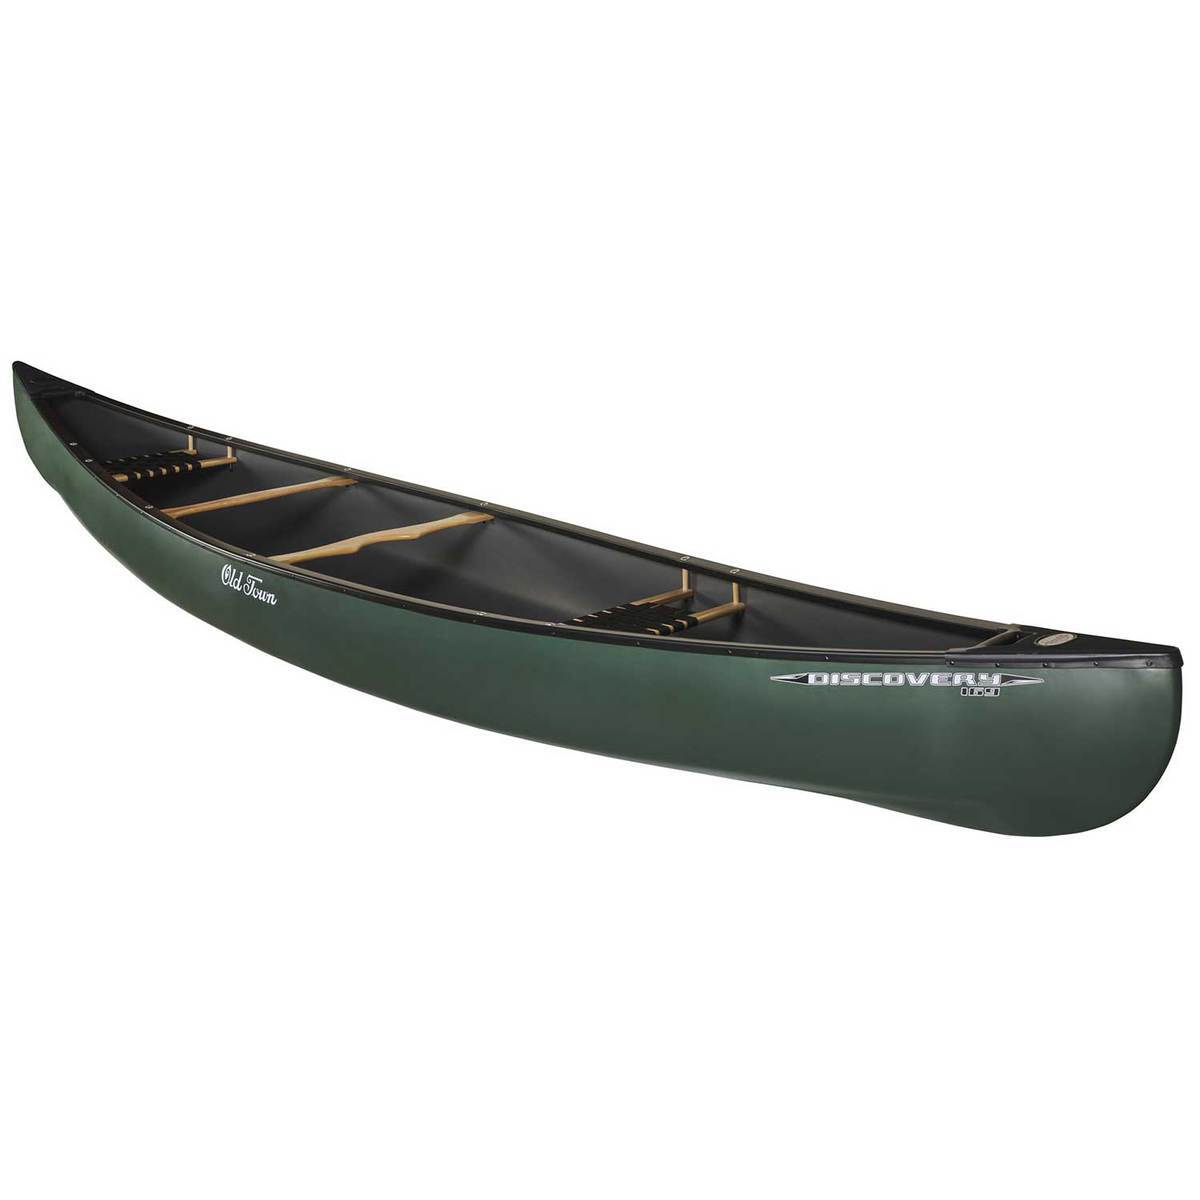 20+ Old Town Canoe Fishing Kayak